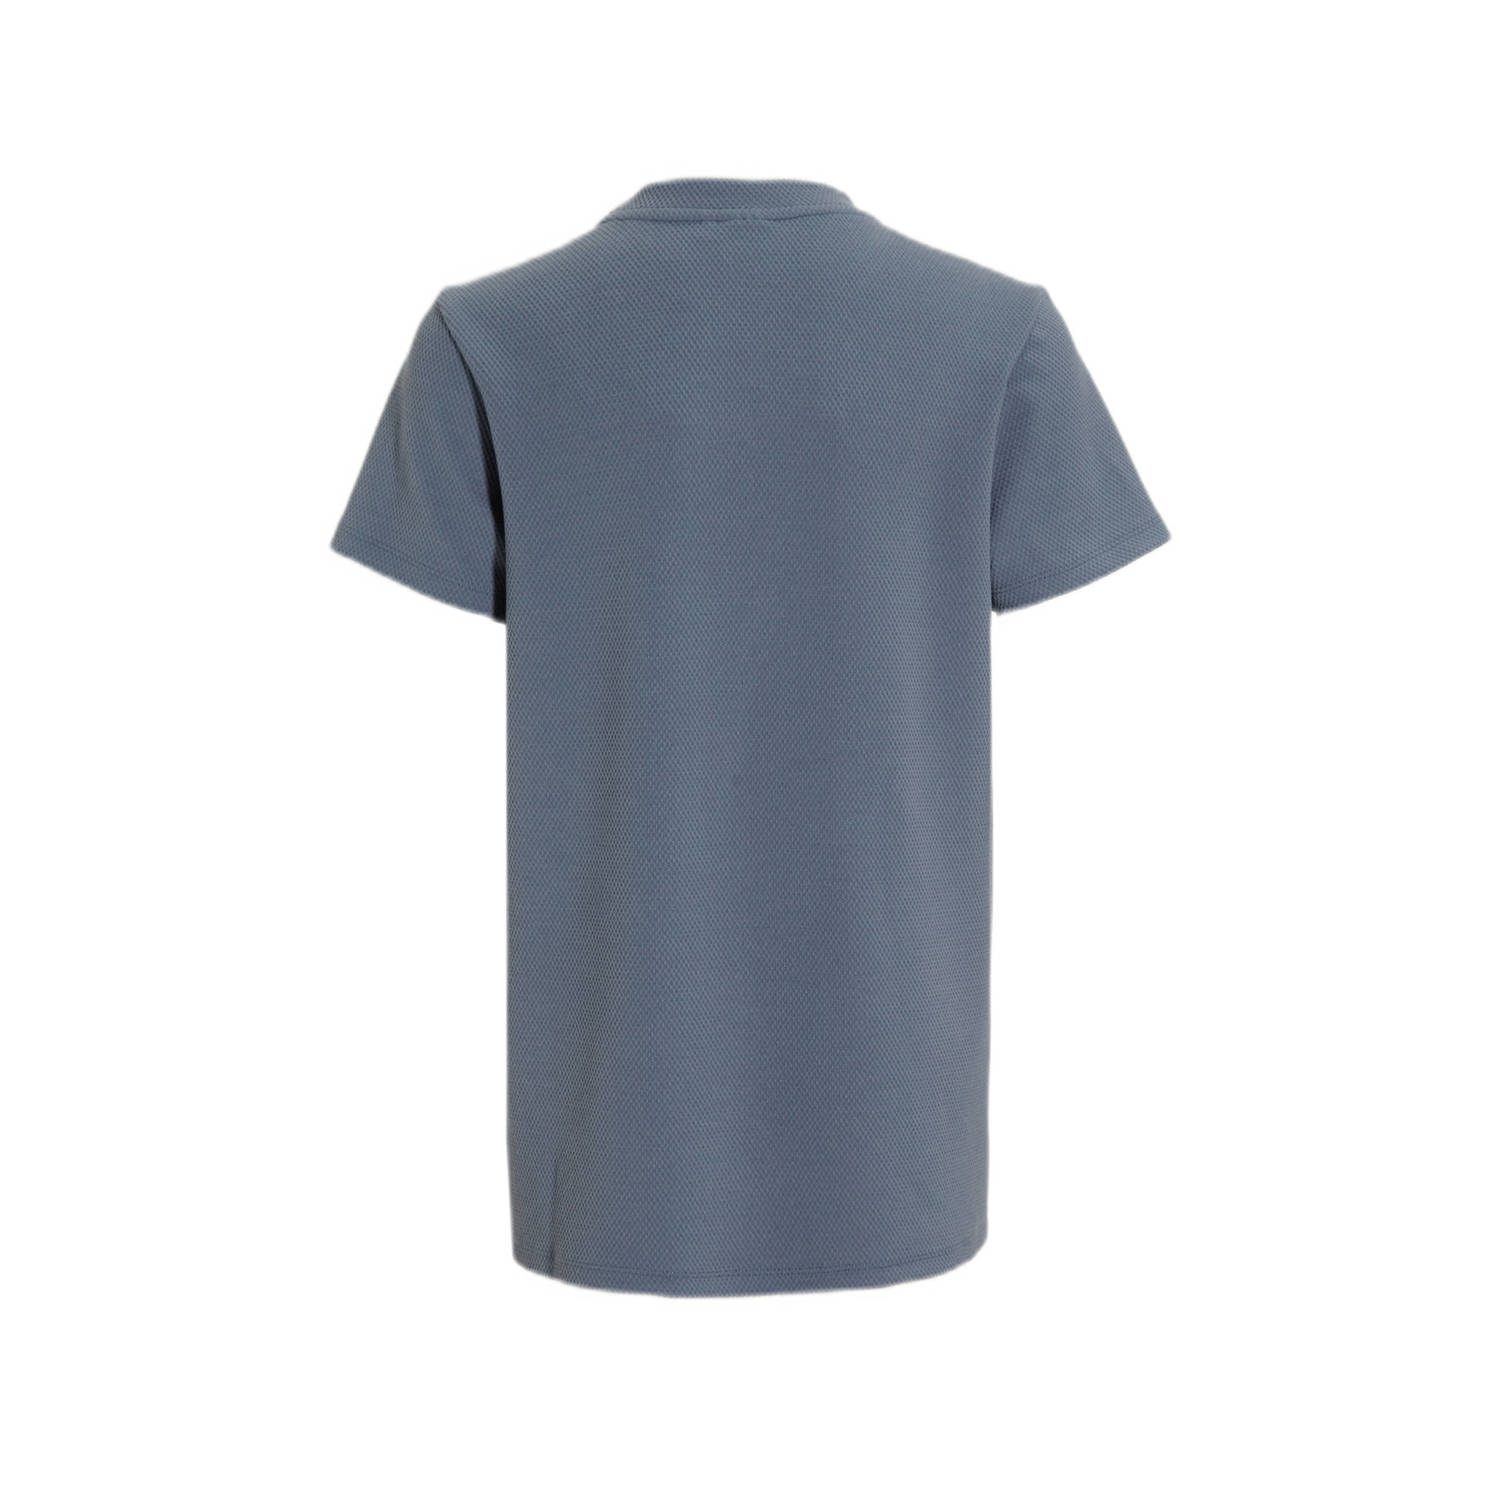 Bellaire T-shirt met printopdruk grijsblauw